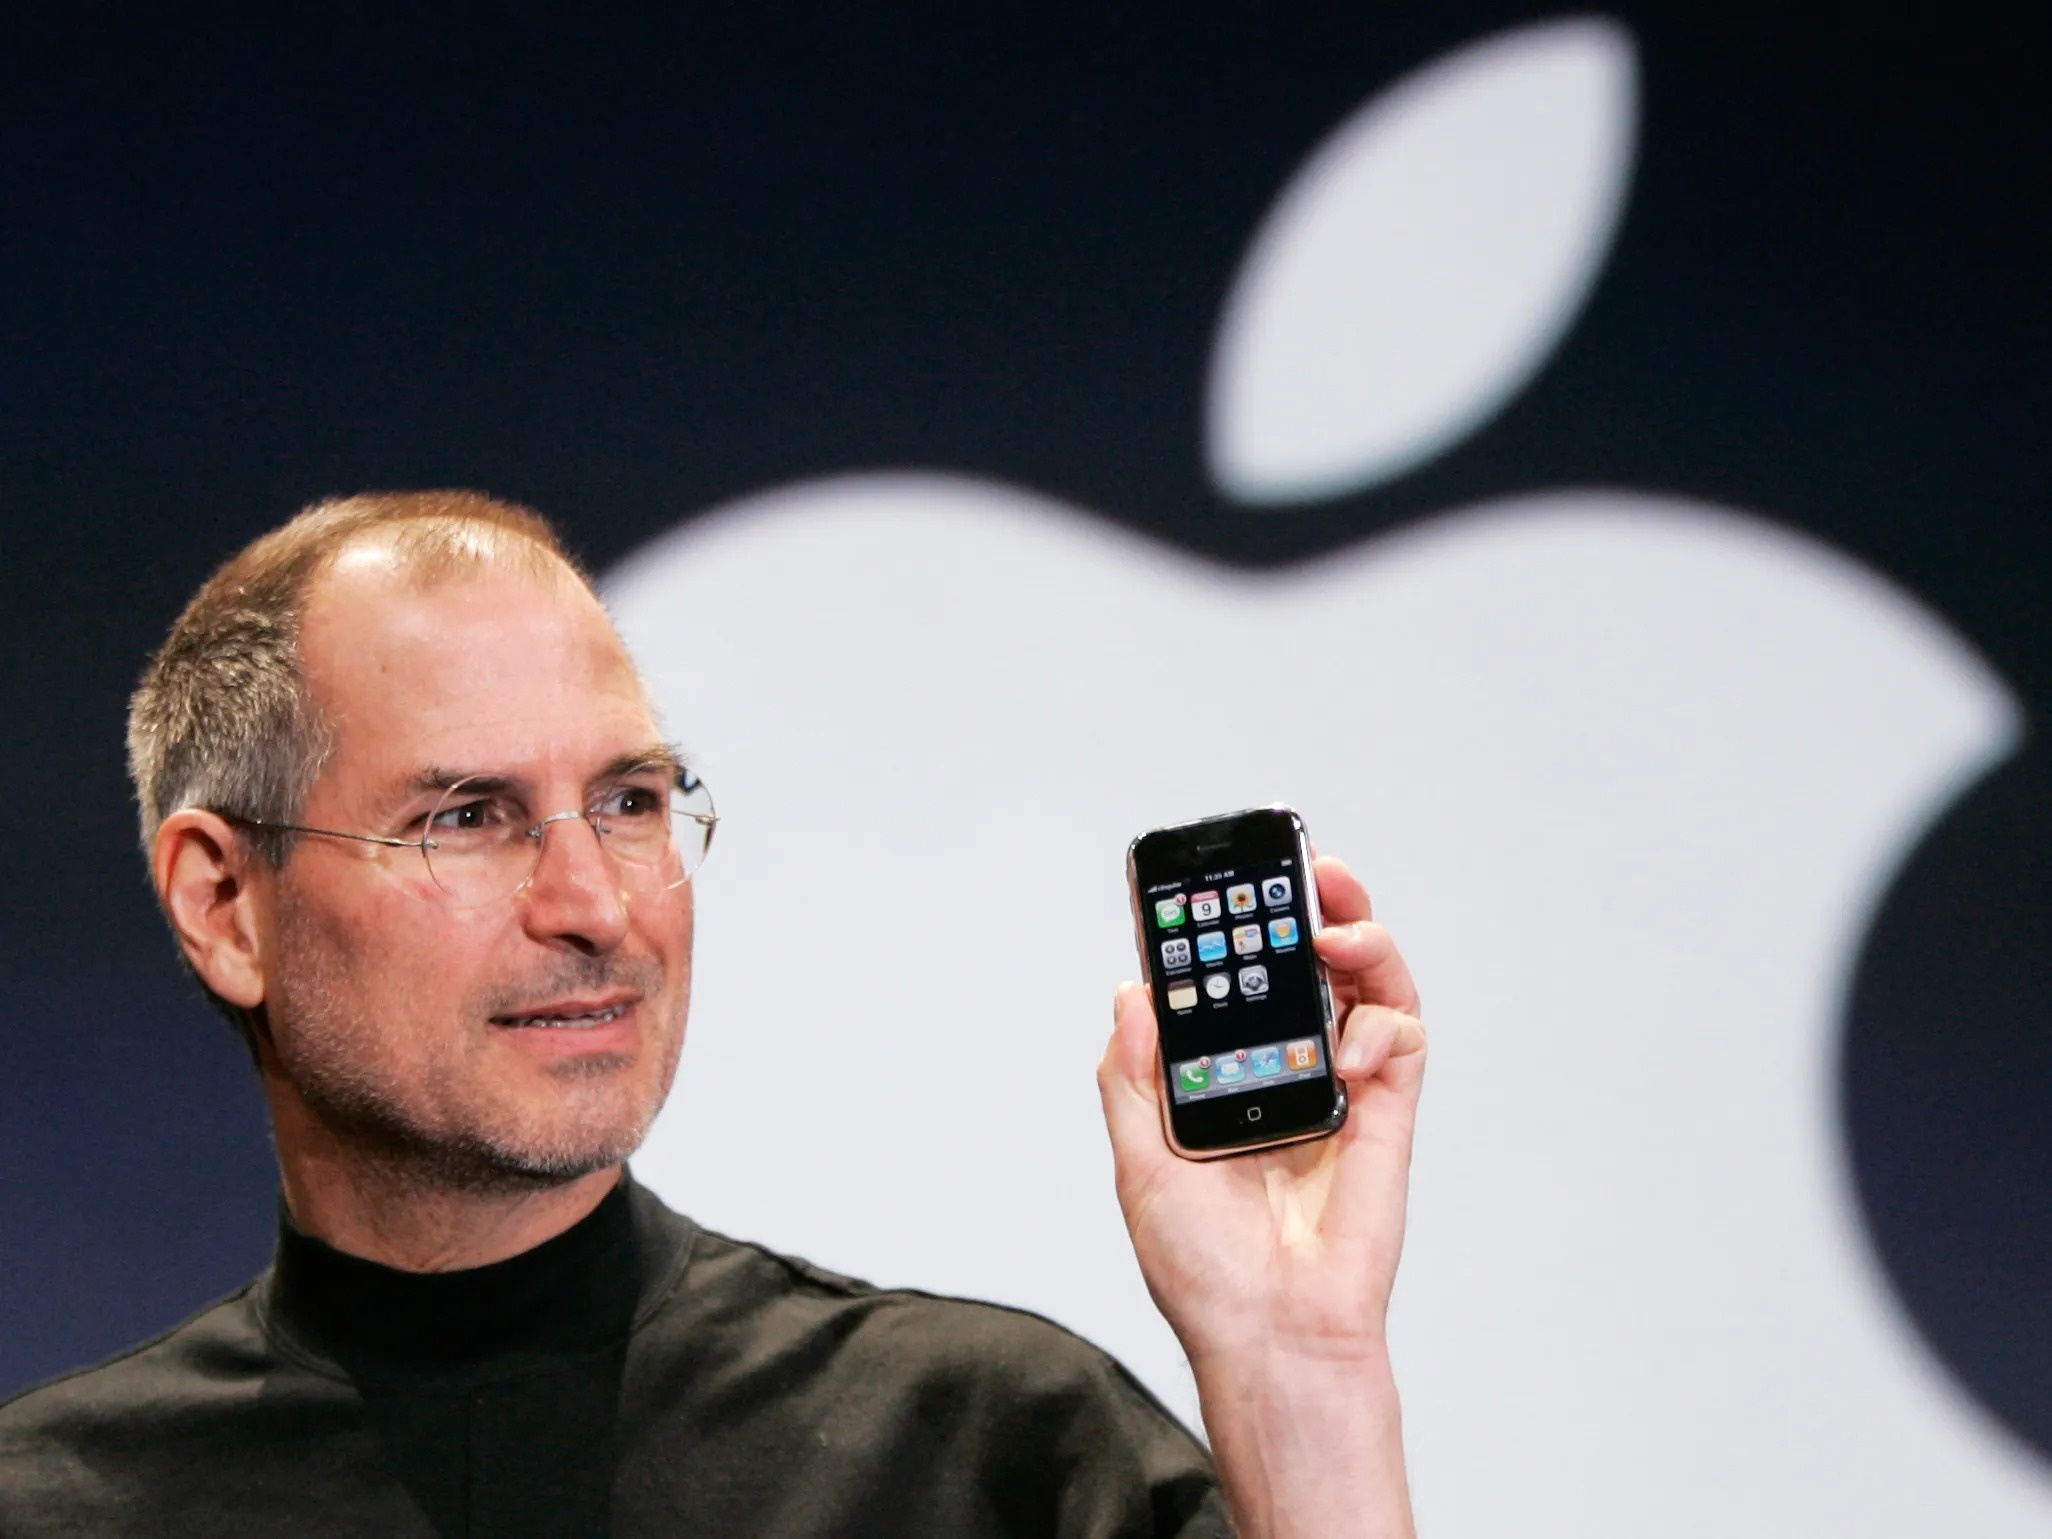 iPhone đời đầu nguyên hộp được rao bán, giá dự kiến 50.000 USD - ảnh 4